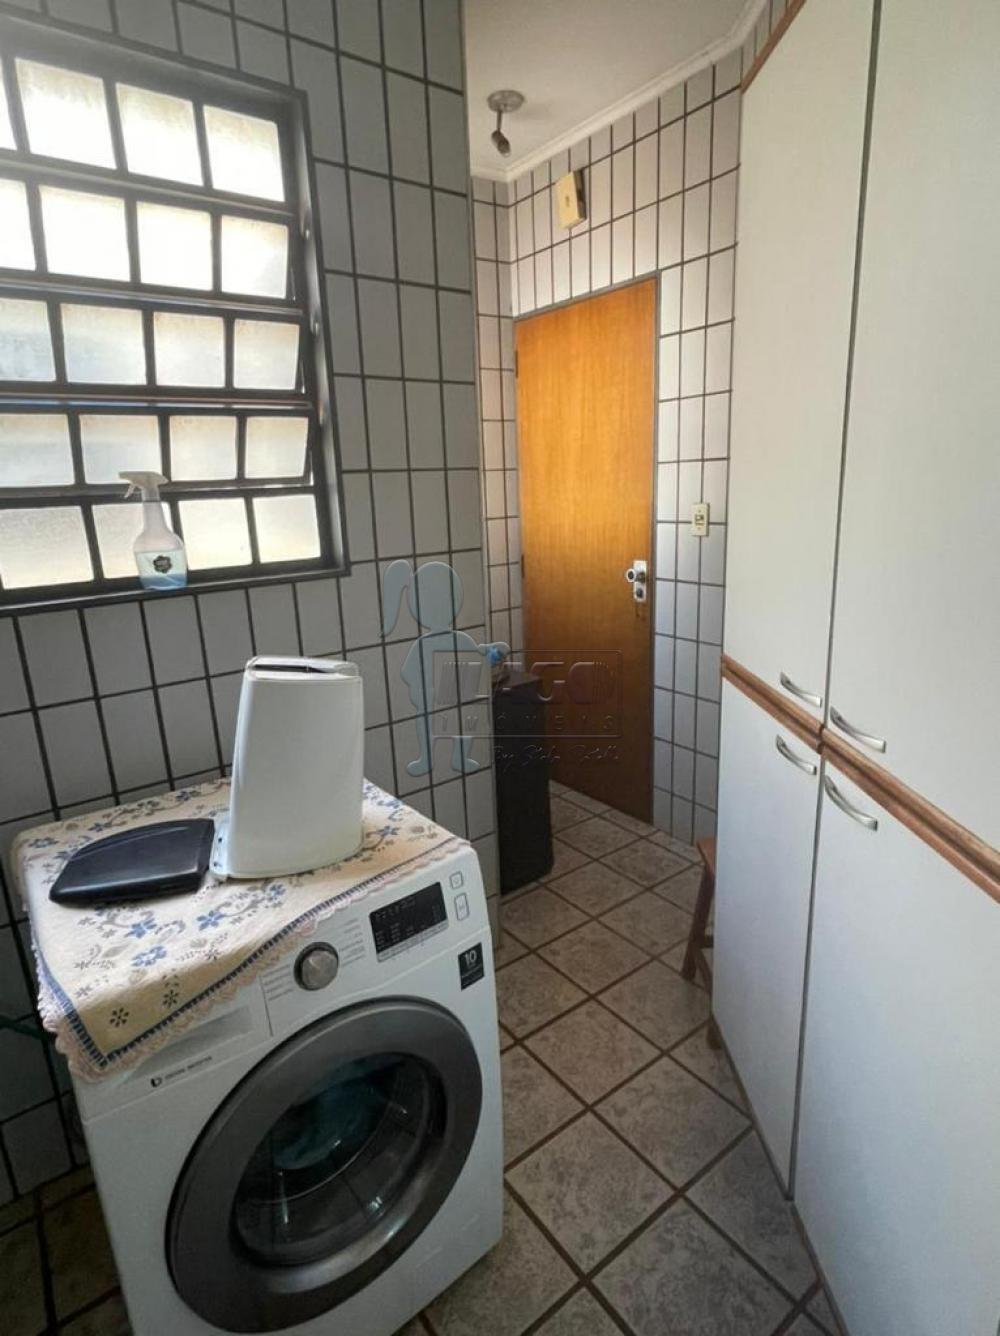 Comprar Apartamento / Padrão em Ribeirão Preto R$ 450.000,00 - Foto 4